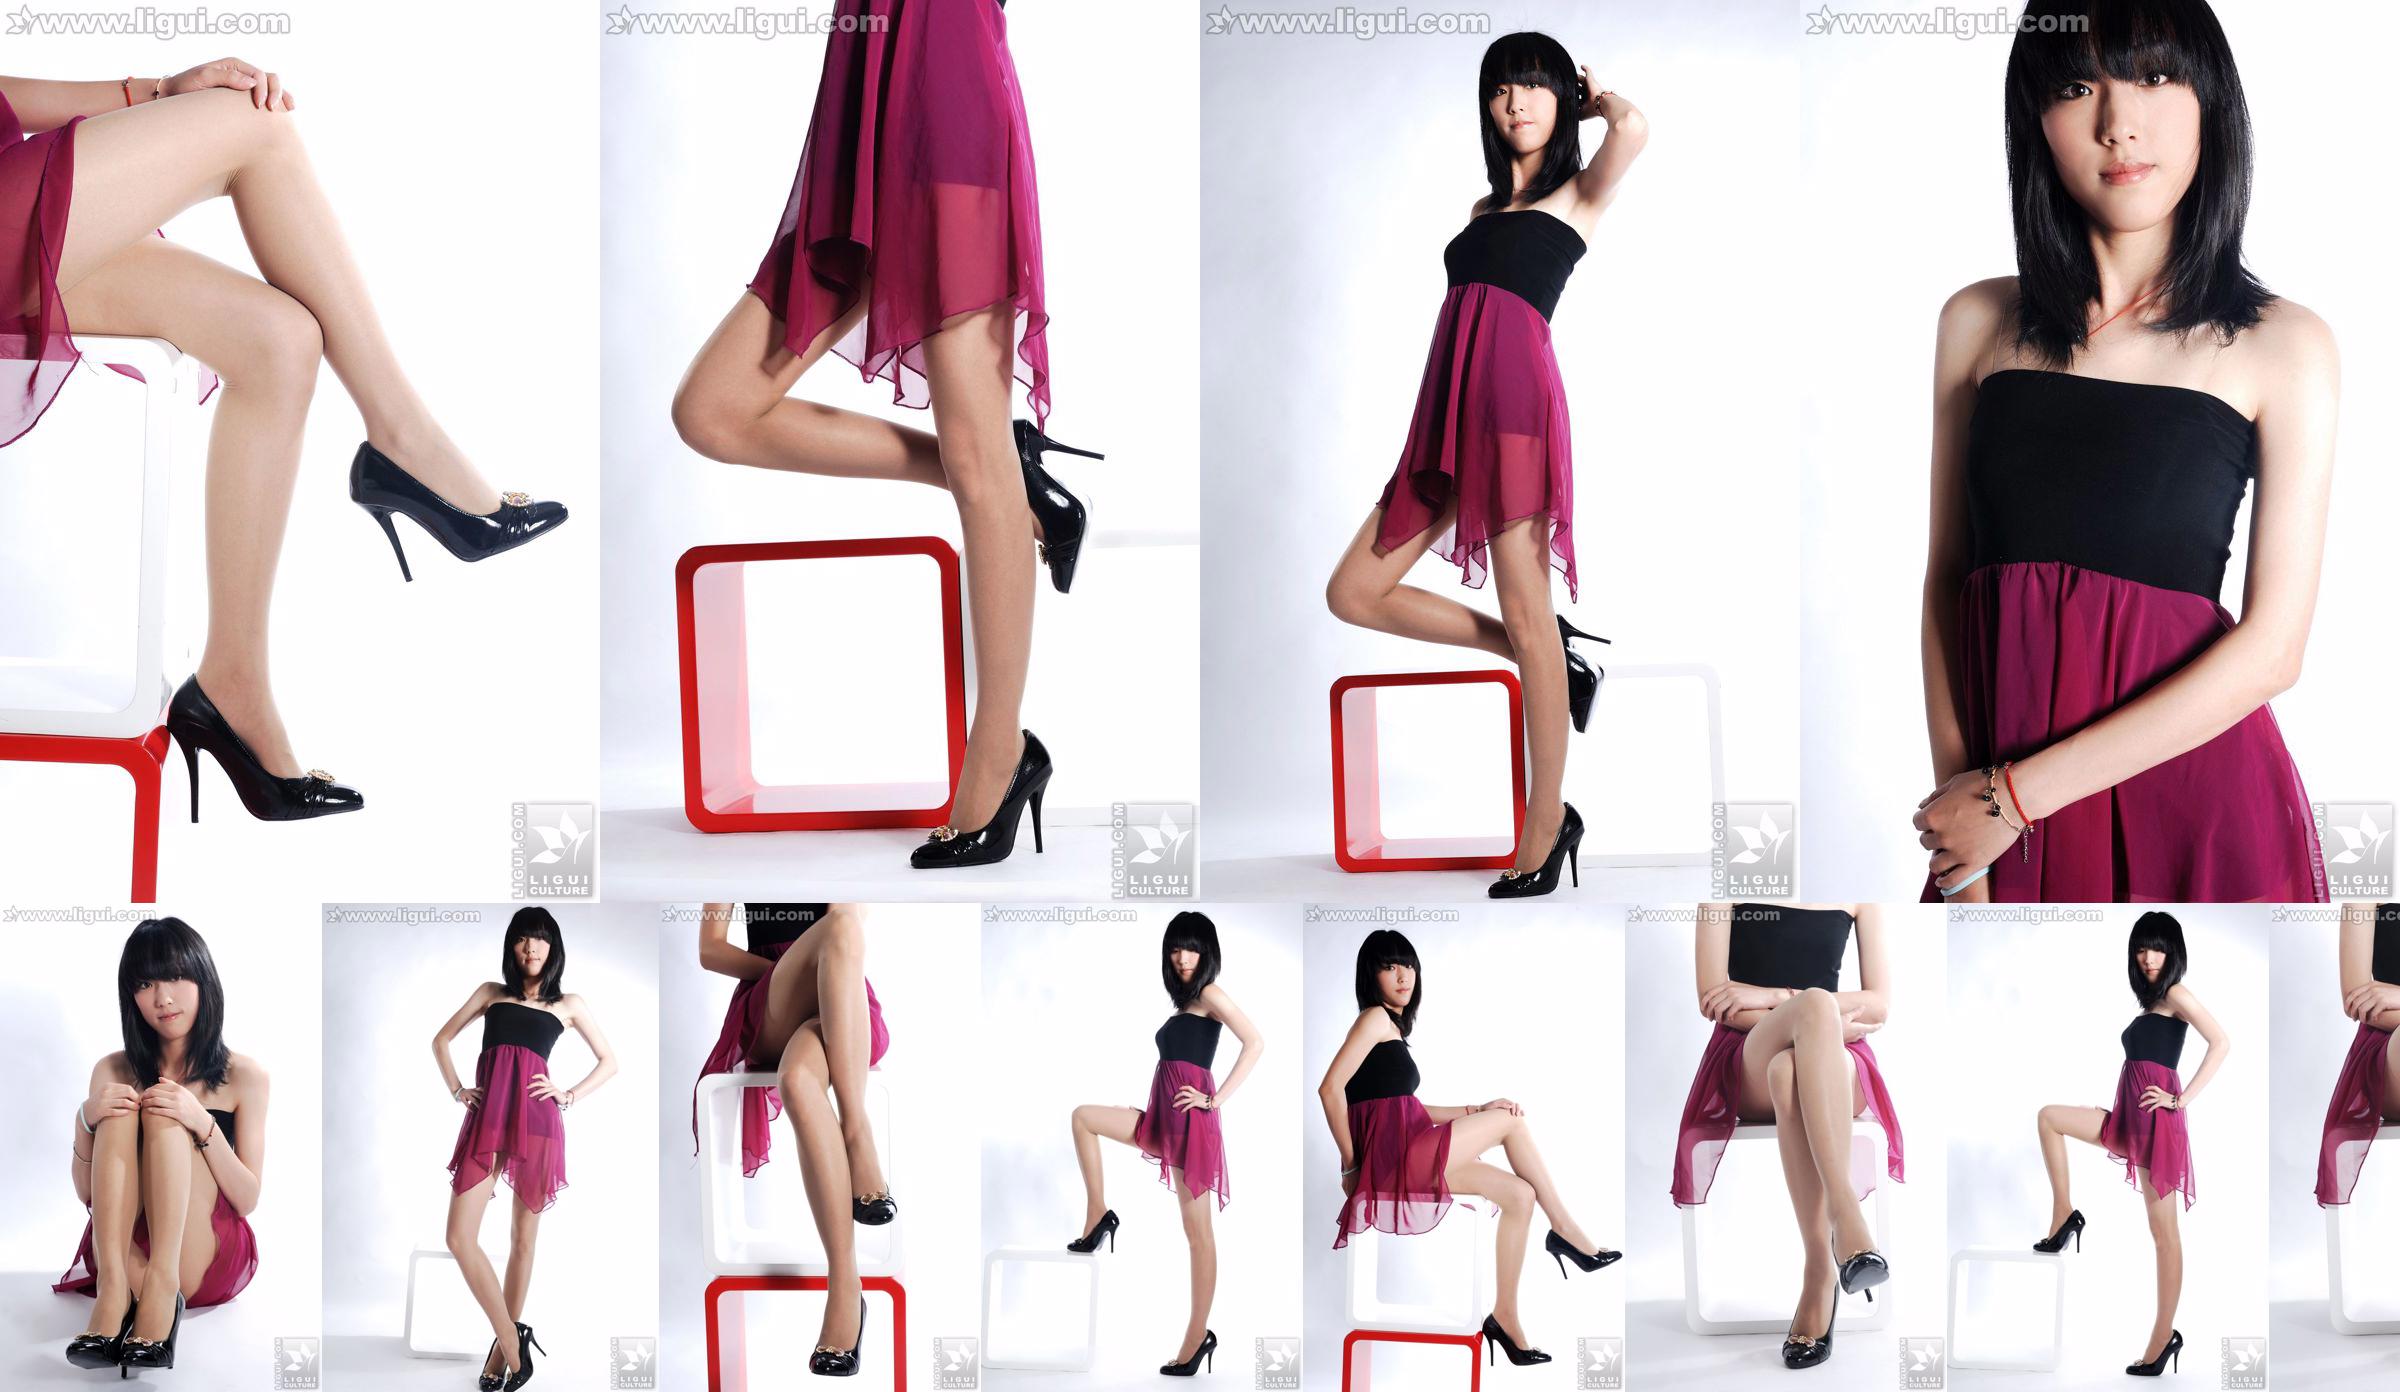 นางแบบ Lu Yingmei "Top Visual High-heeled Blockbuster" [丽柜 LiGui] ภาพถ่ายขาสวยและเท้าหยก No.cdcdda หน้า 1